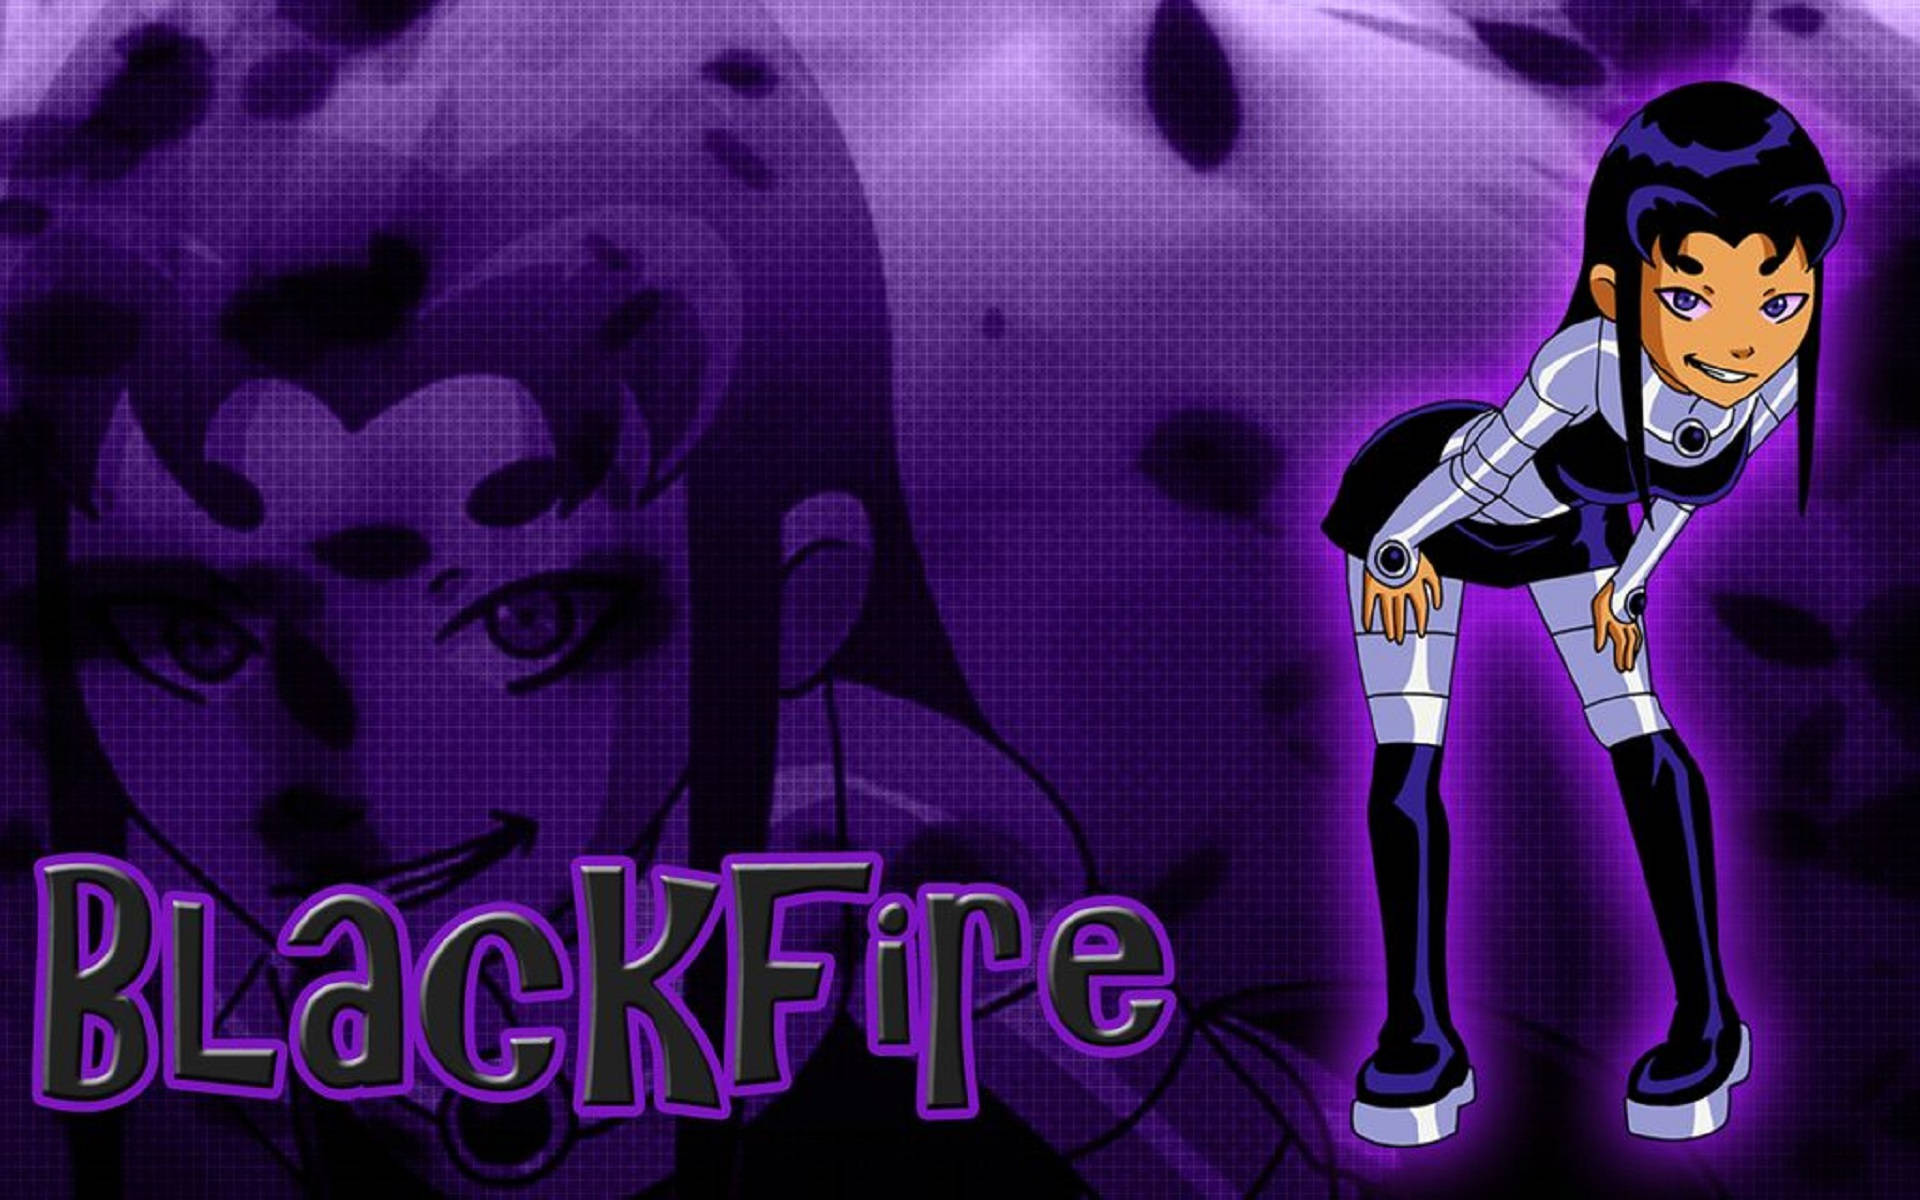 Blackfire Cartoon Banner Background